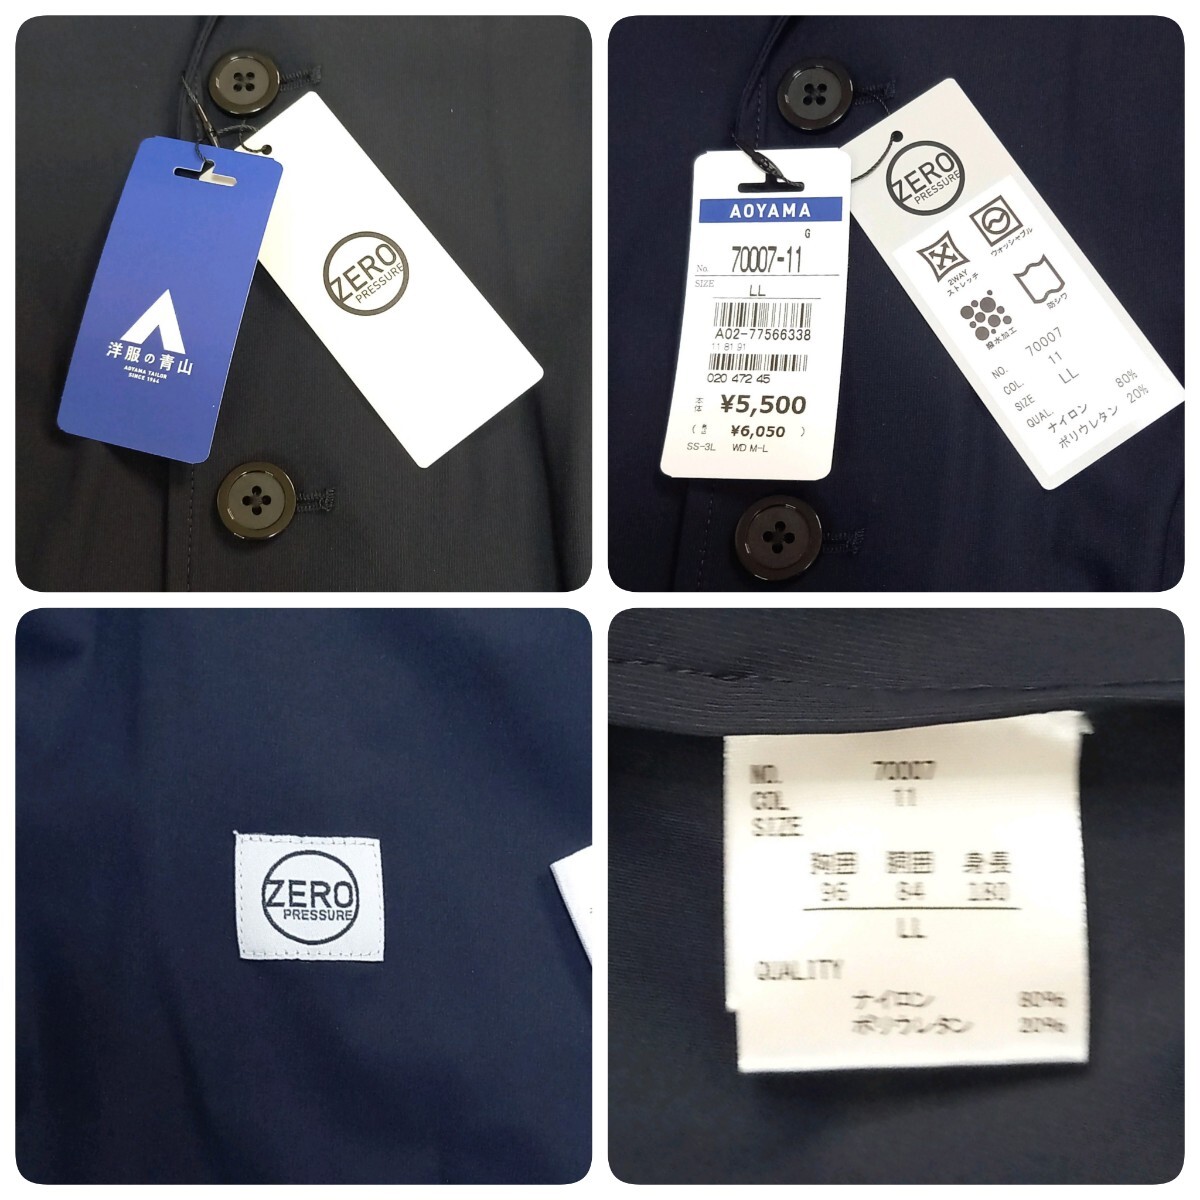 【新品・タグ付き】洋服の青山 ZERO PRESSURE SUIT テーラードジャケット XL ネイビー 速乾 2ボタンウォッシャブル 4WAYストレッチ